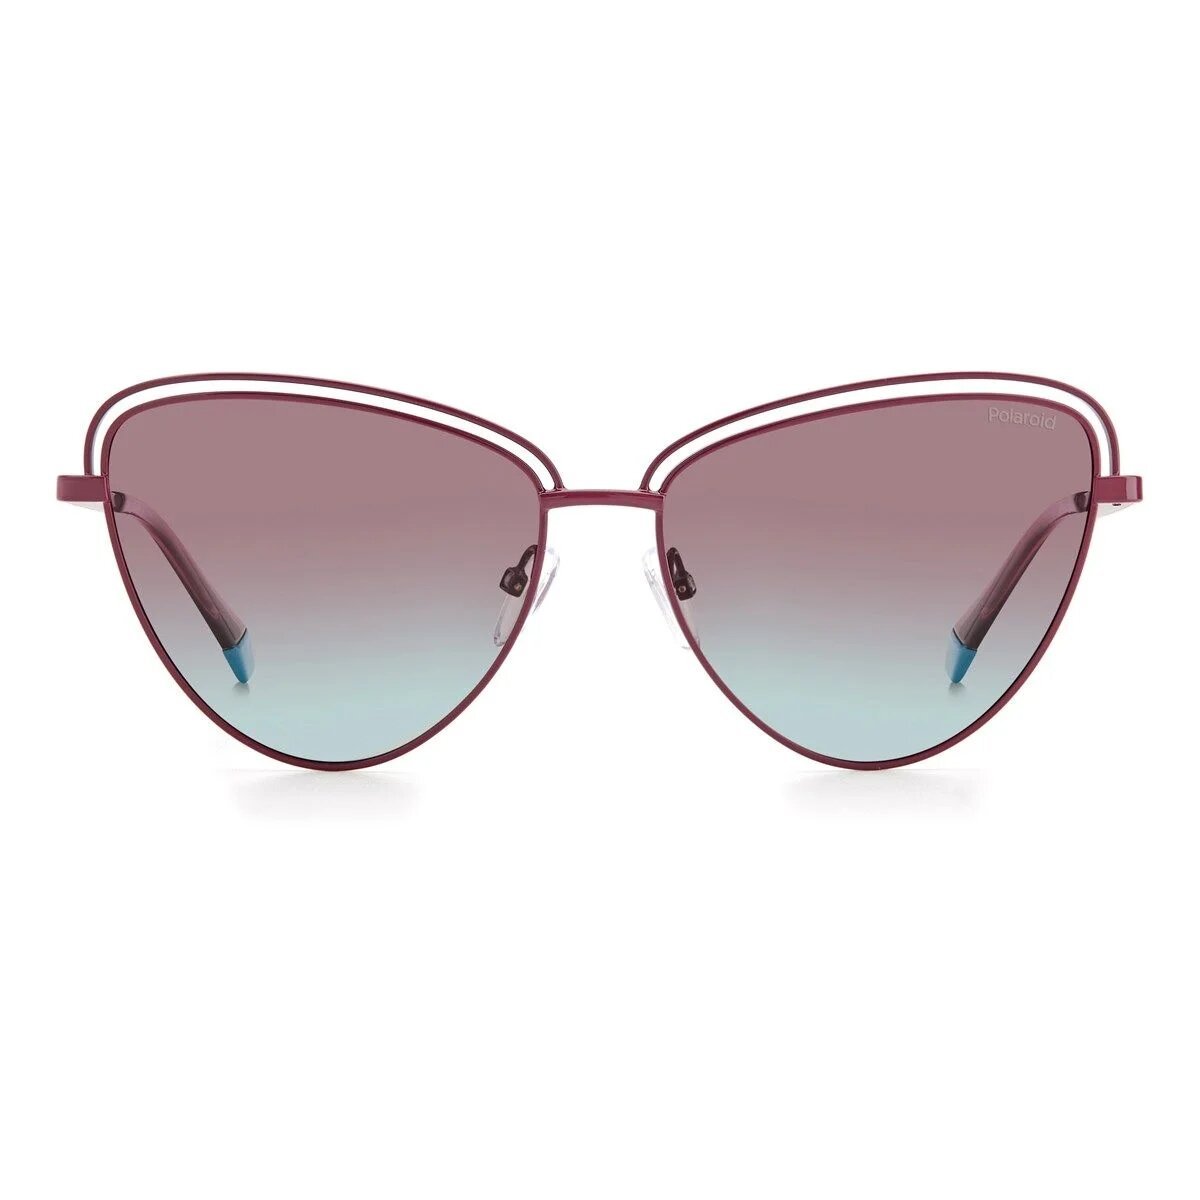 Burgundy cat-eye sunglasses for women by Polaroid